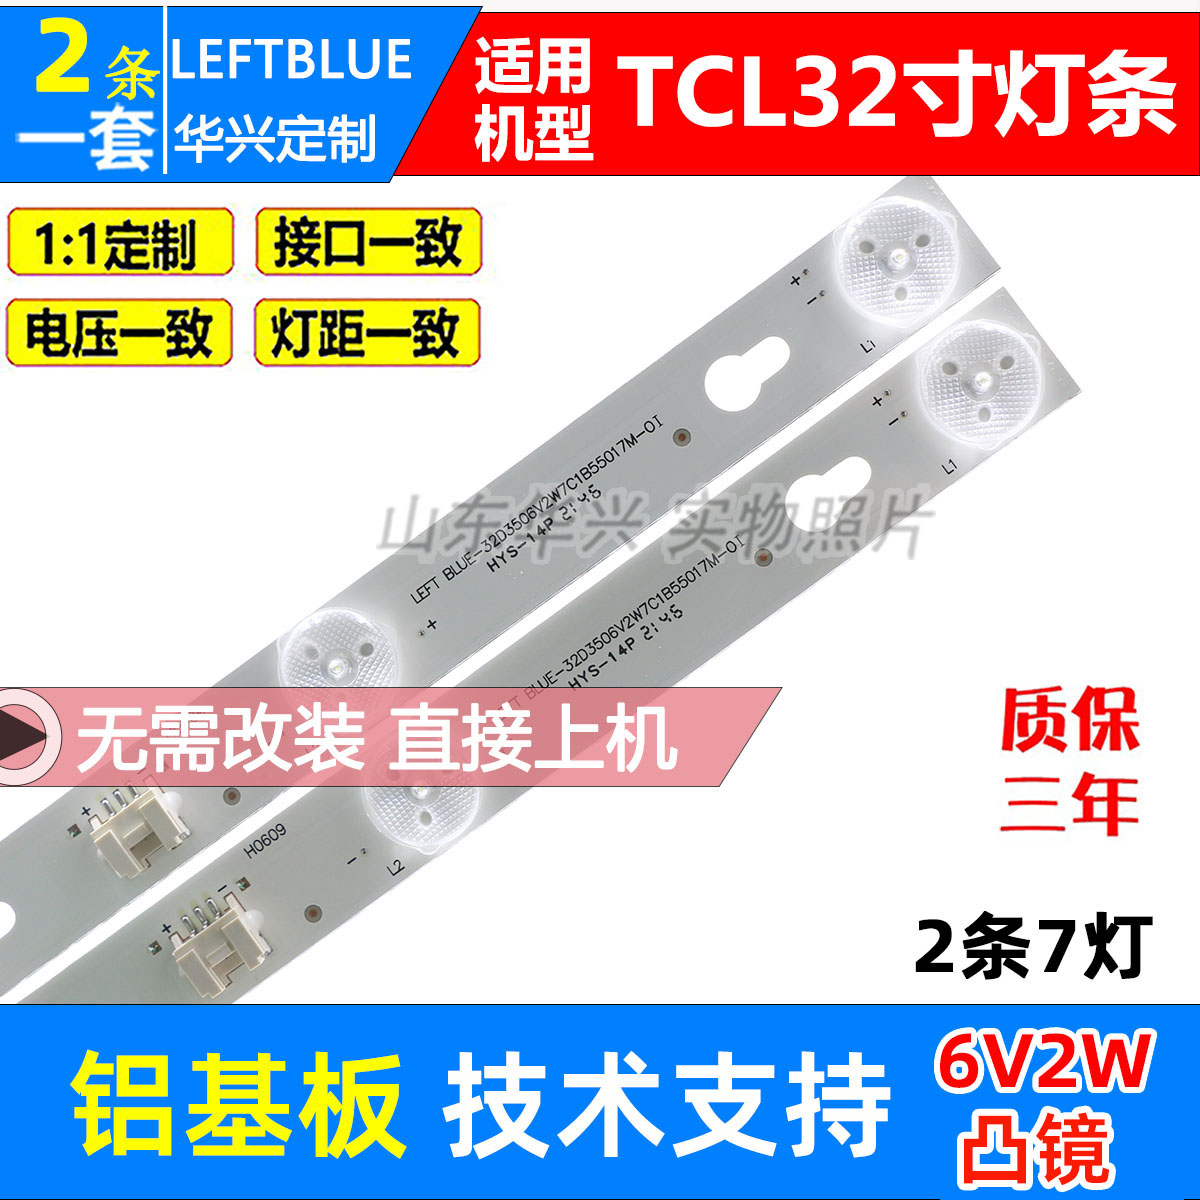 TCL L32F1680B light bar 32HR330M07A2 V2 screen LVW320CSOT 2 sets of 7 lights 6V